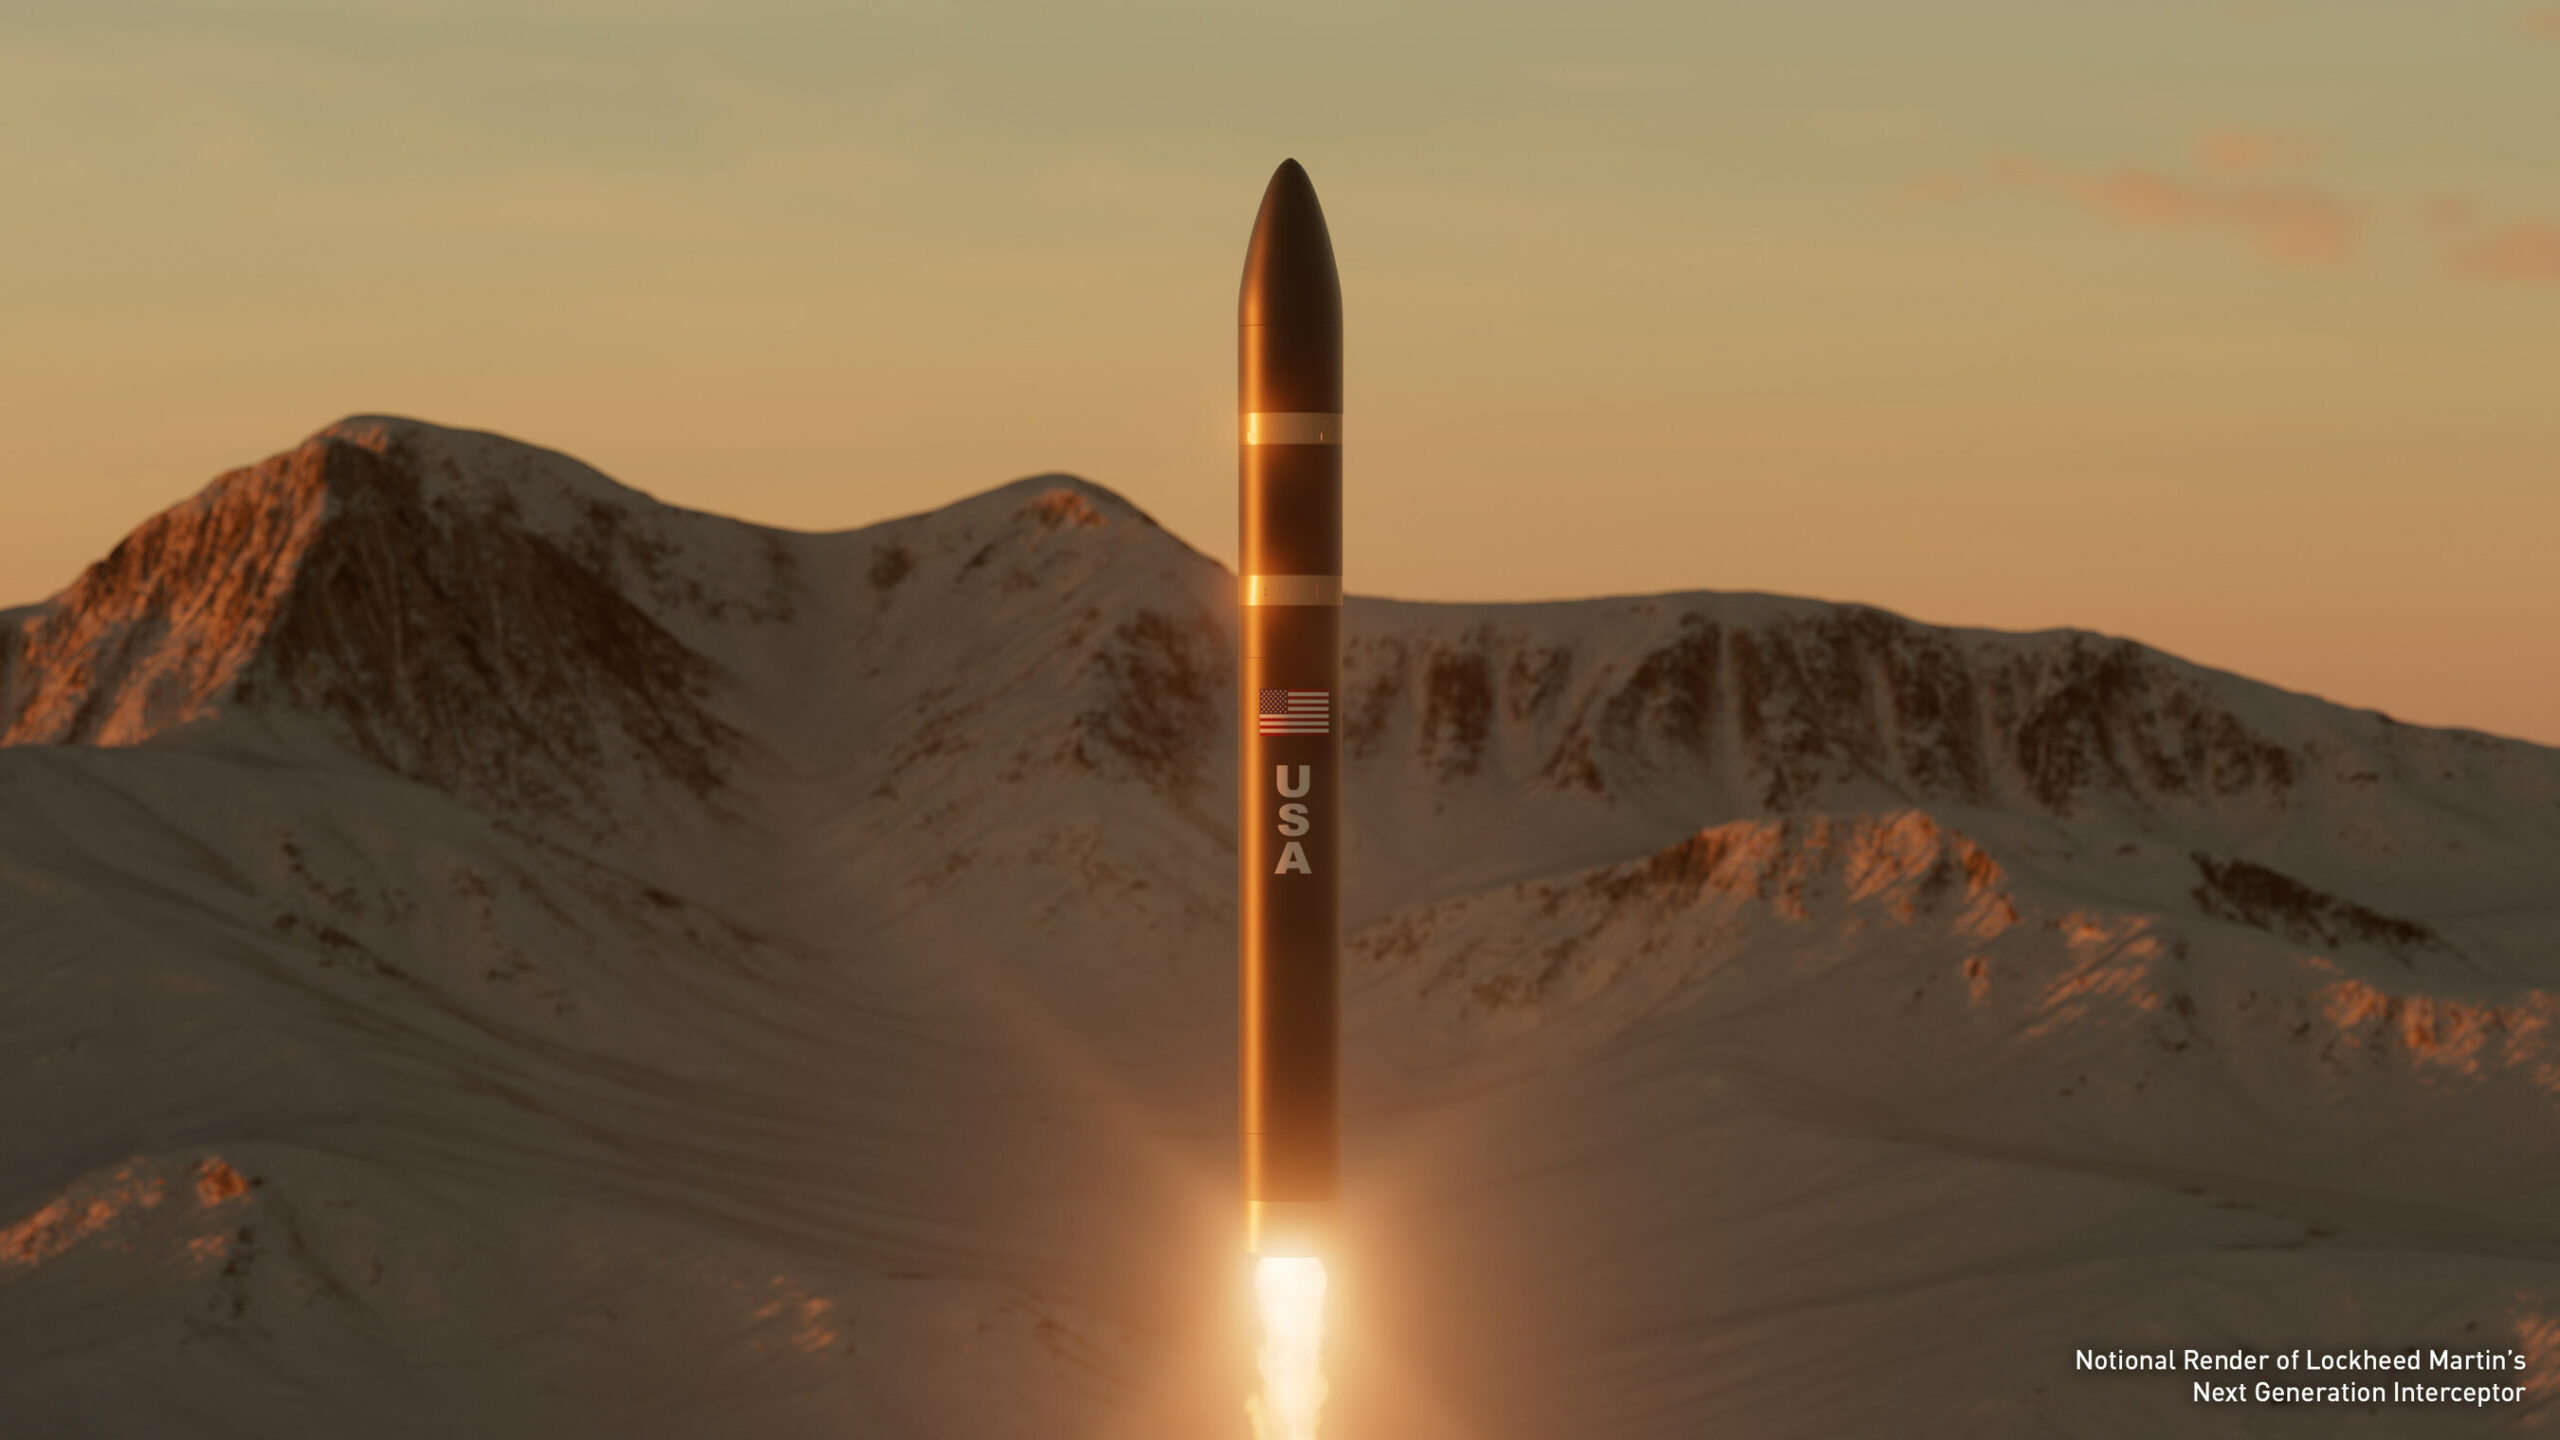 شركة لوكهيد مارتن تفوز بعقد دفاع صاروخي أميركي بقيمة 17 مليار دولار لتطوير الجيل القادم من الصواريخ الاعتراضية